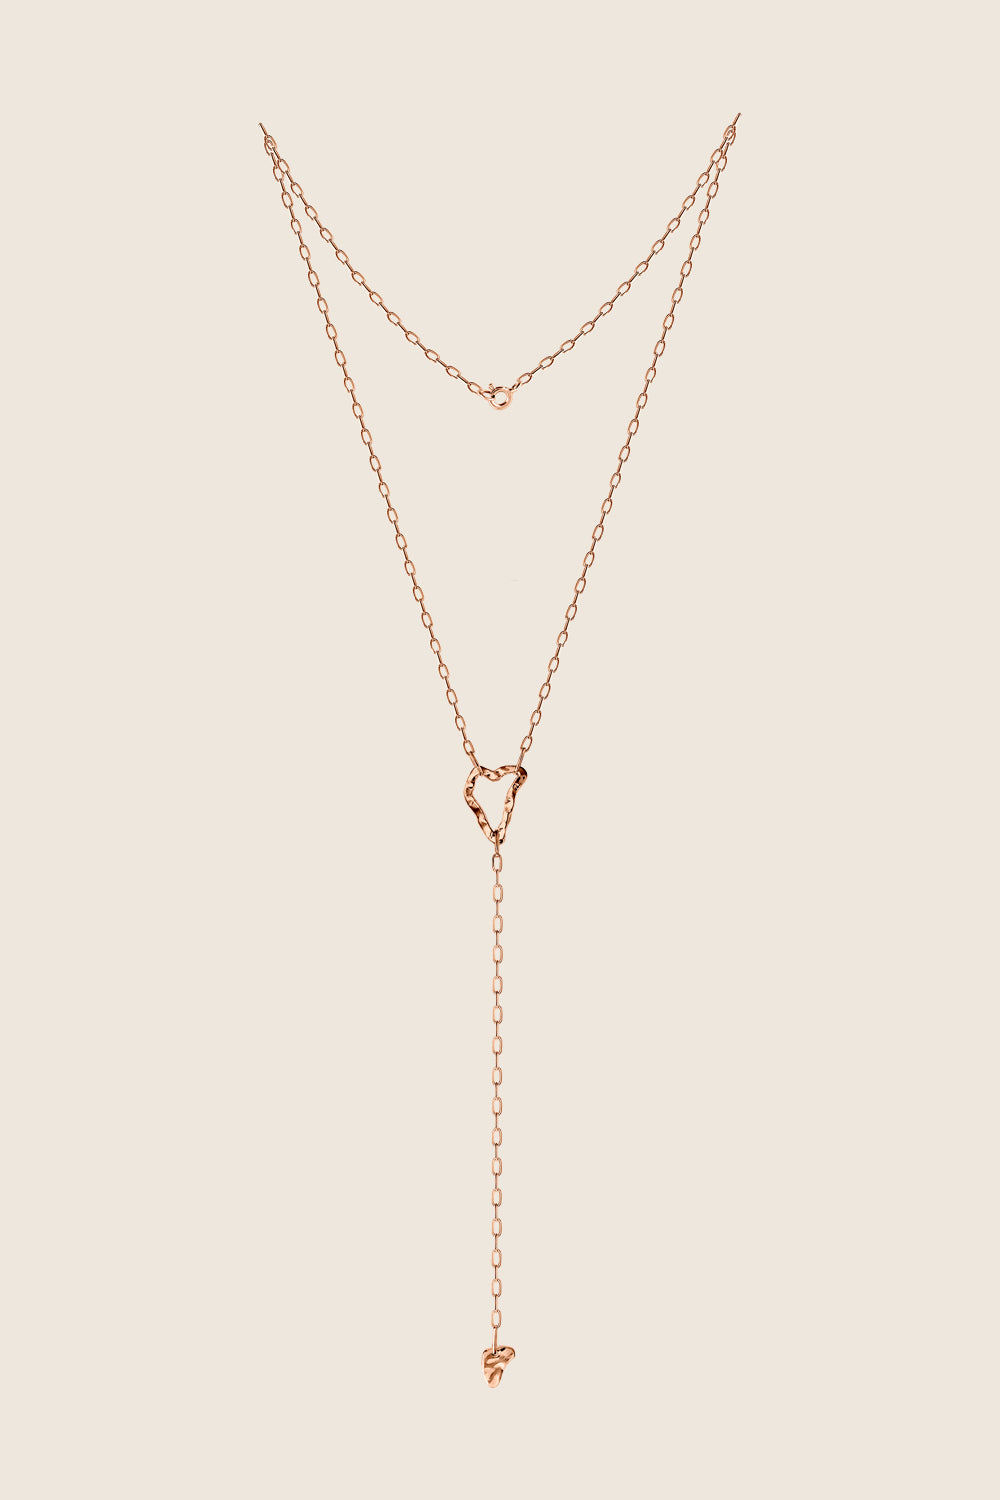 DORSA COLLA rose necklace